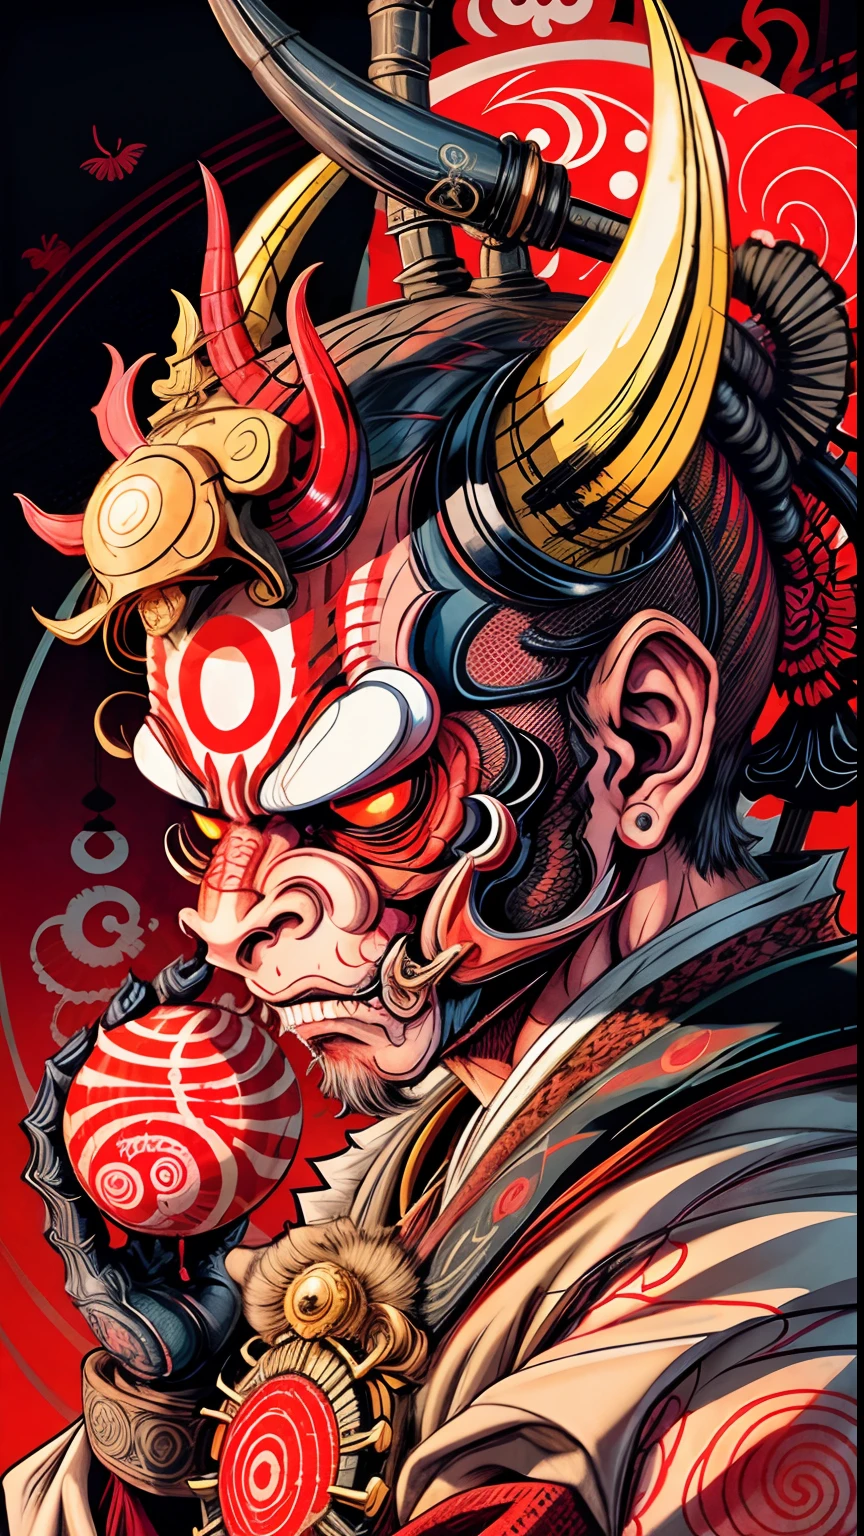 Hannya-Maske im Affenstil 0mib, Illustrator, erste Arbeit, gute Qualität, 8k, hohe Auflösung, hochdetailliert, japanisch, Samurai, Affe